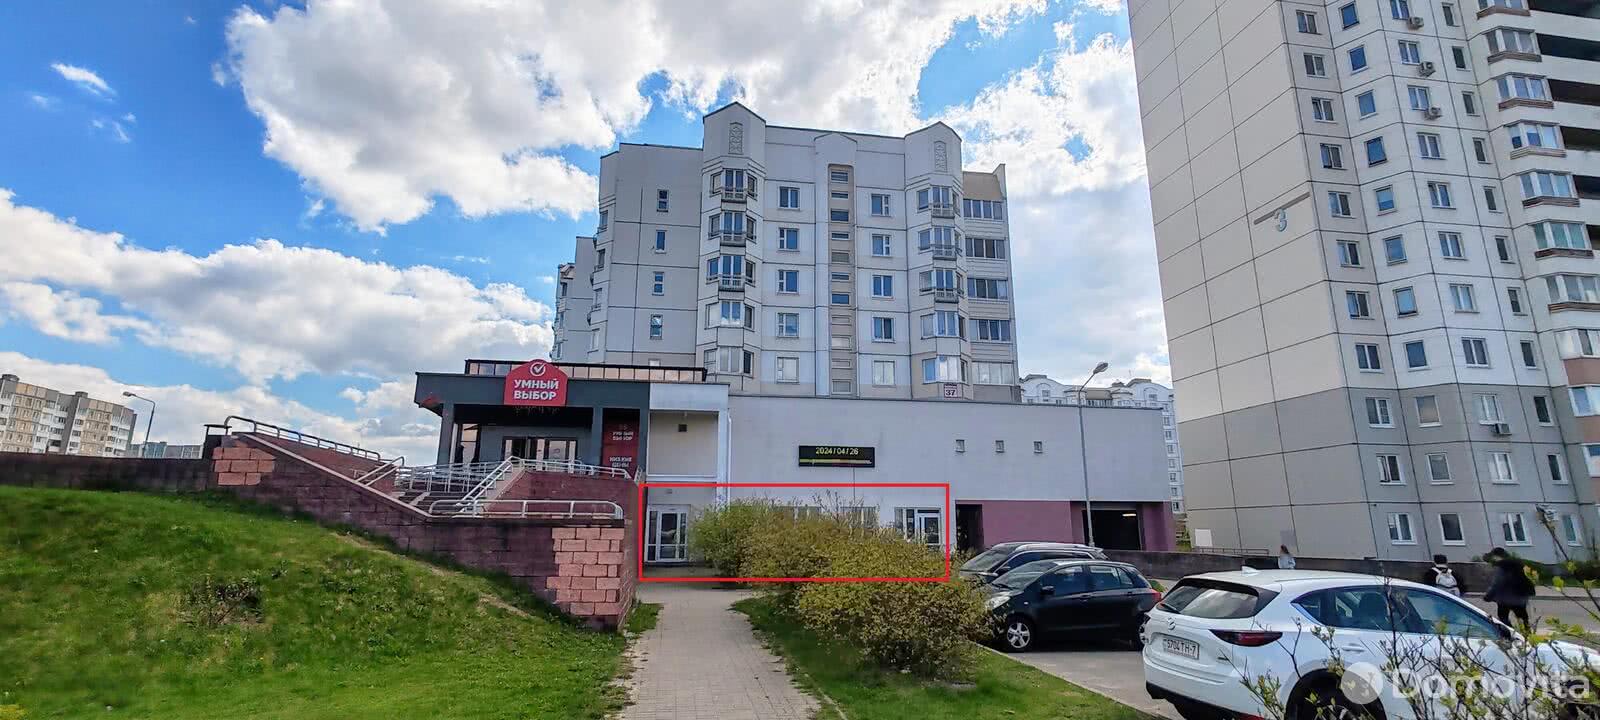 Аренда офиса на ул. Кунцевщина, д. 37 в Минске, 1526EUR, код 12079 - фото 2